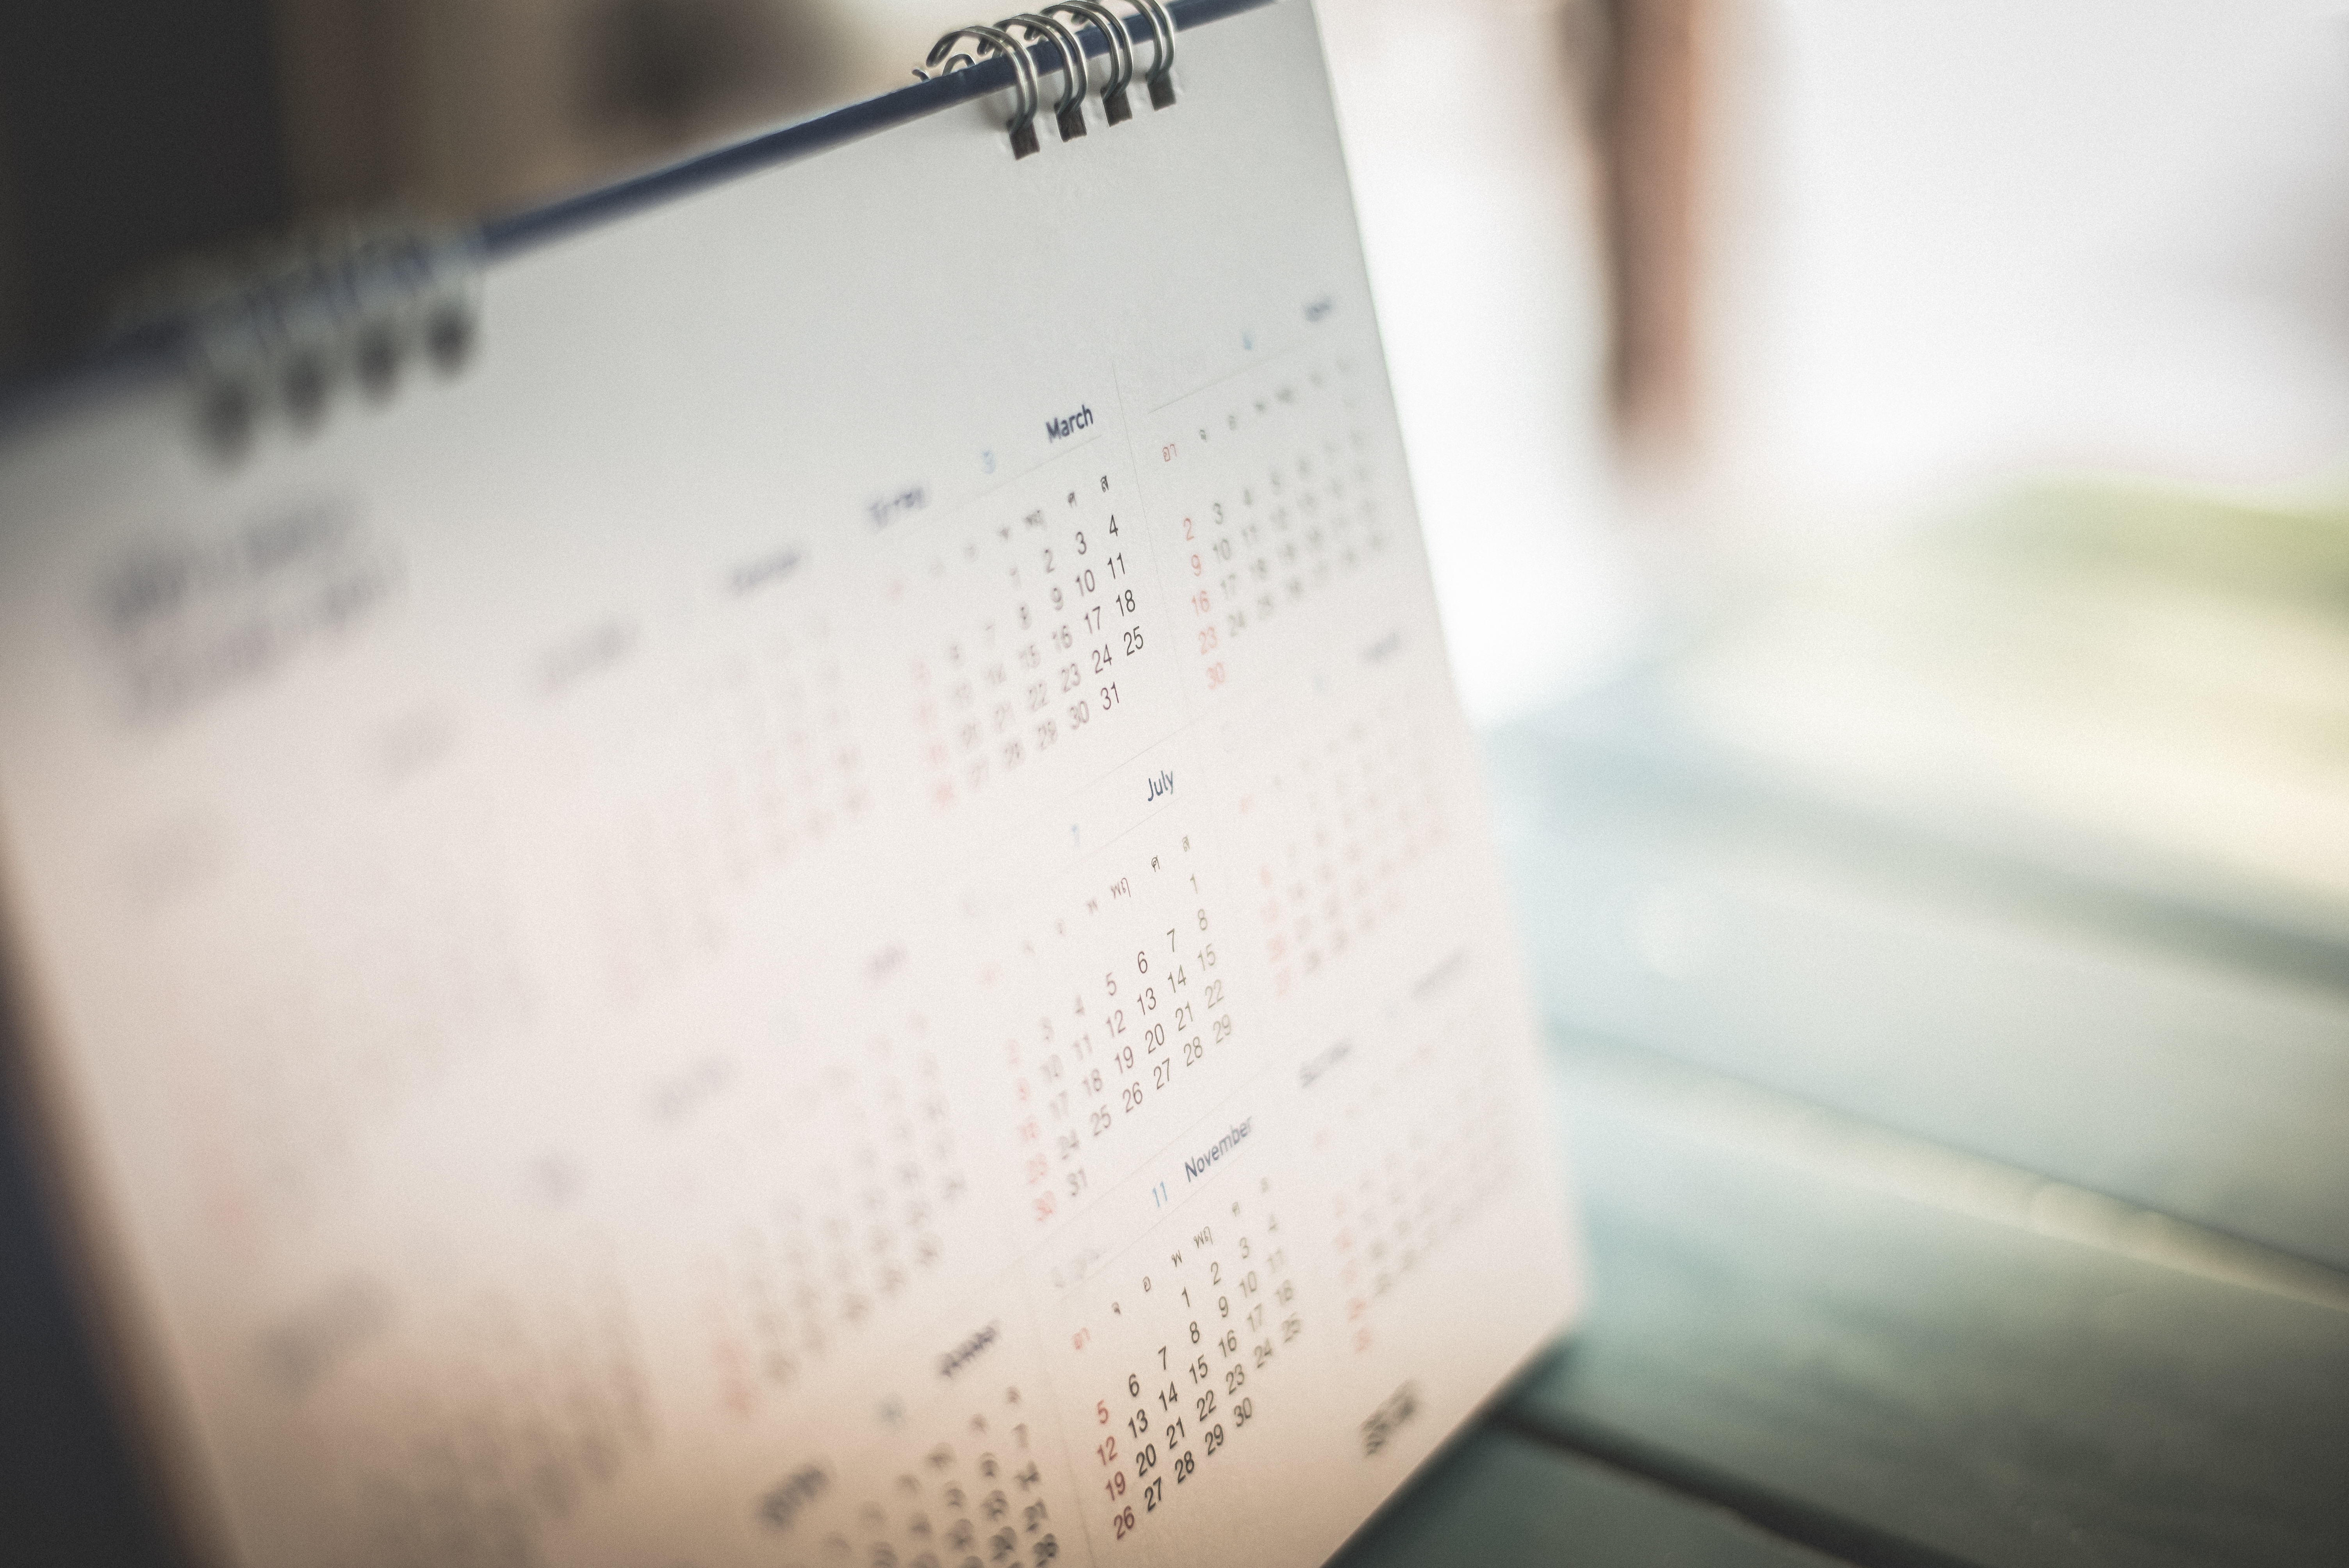 A calendar on a tabletop | Source: Shutterstock